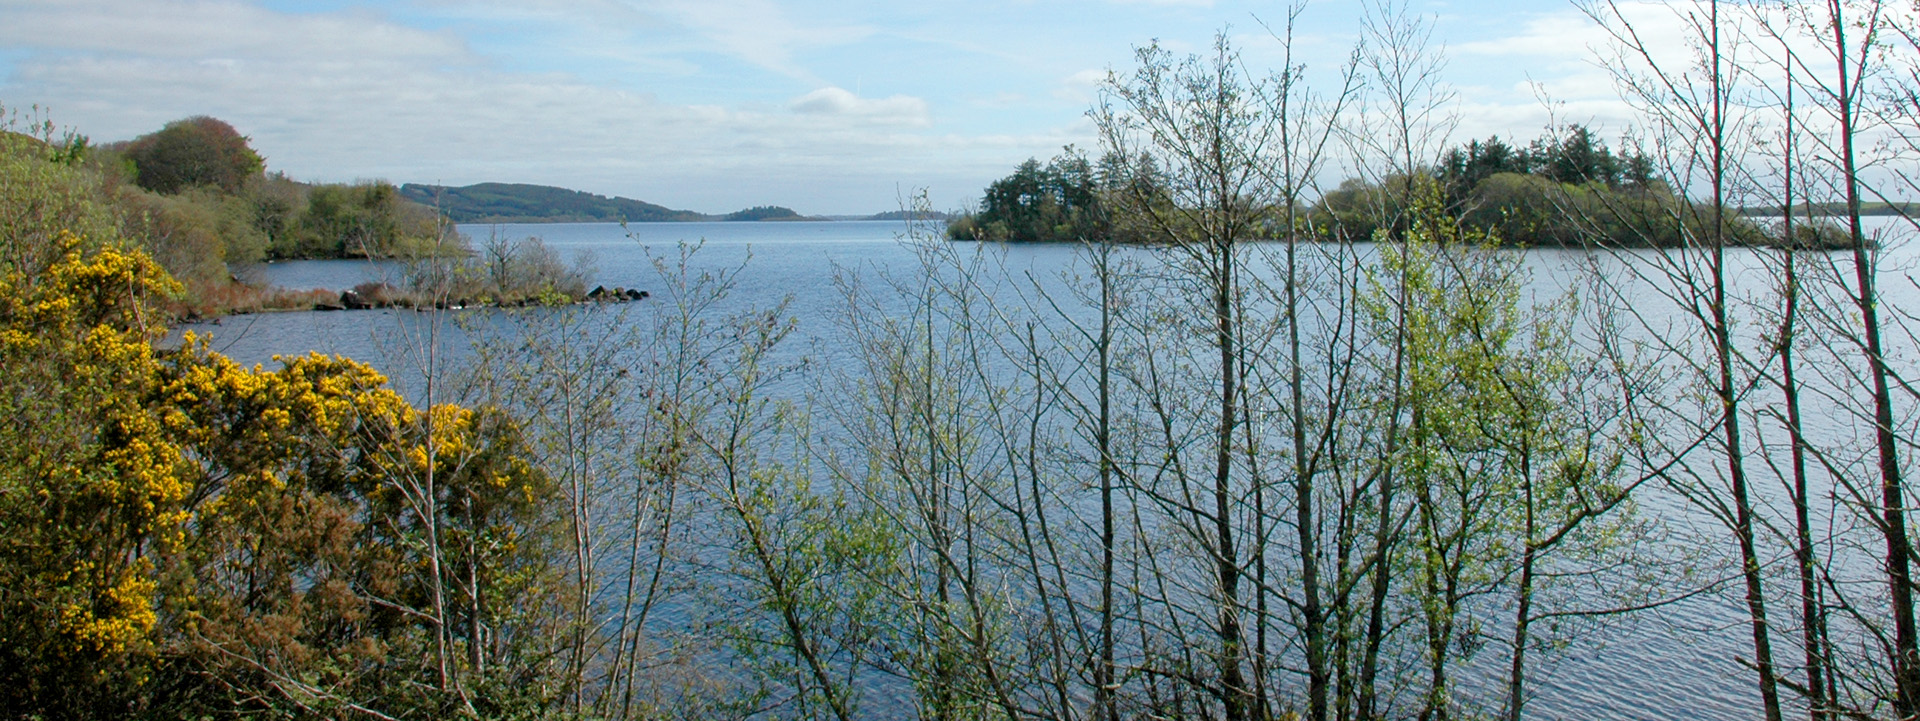 Ein Blick auf den Lough Corrib, Irlands größten Angelsee.